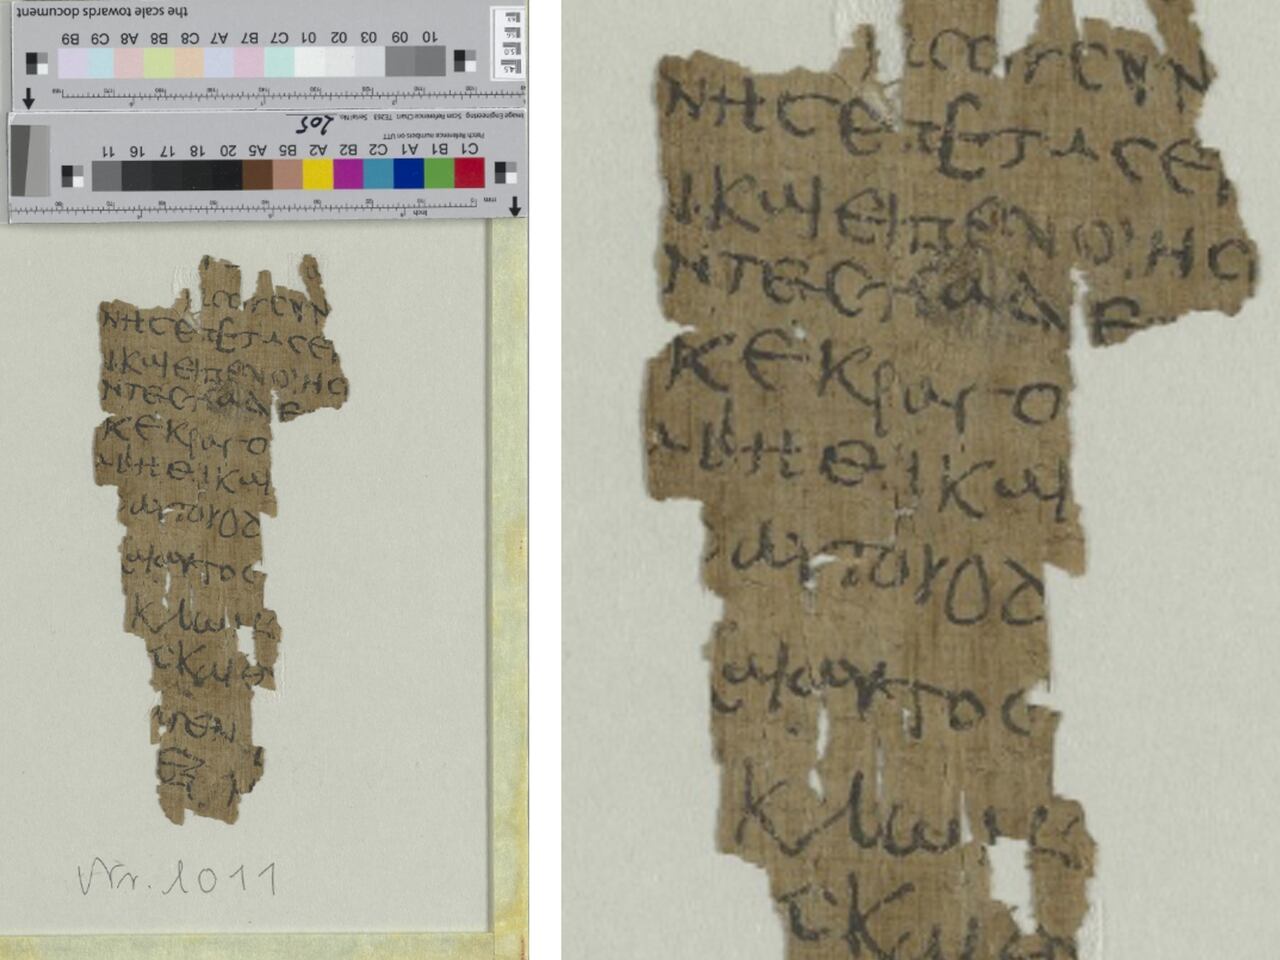 El manuscrito fue encontrado en una biblioteca y su procedencia era desconocida